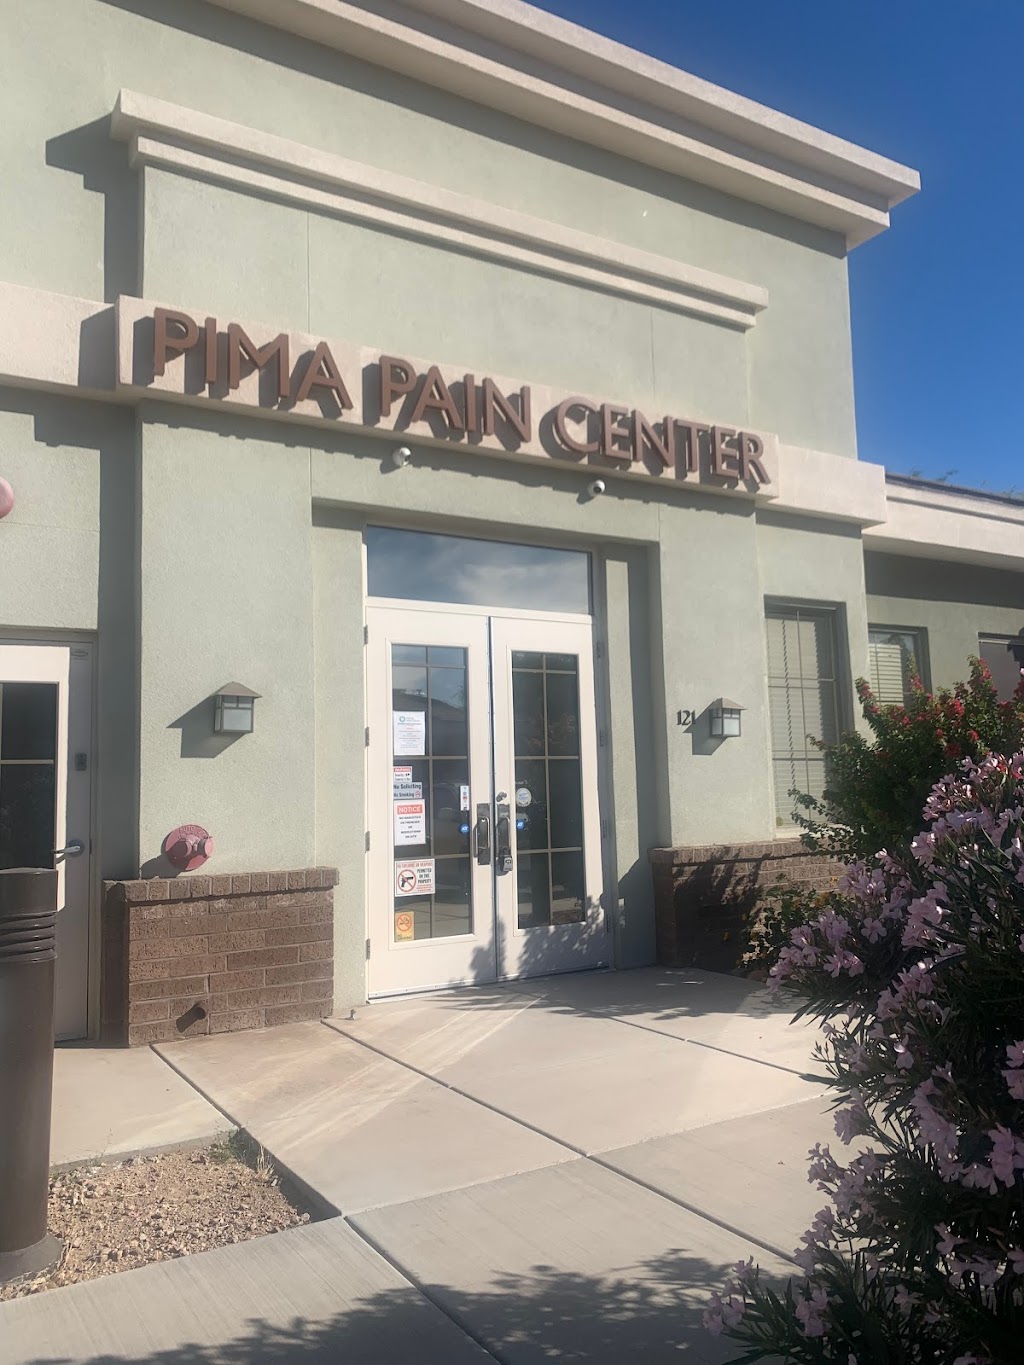 Pima Pain Center - MESA | 2158 N Gilbert Rd STE 121, Mesa, AZ 85203, USA | Phone: (480) 668-6000